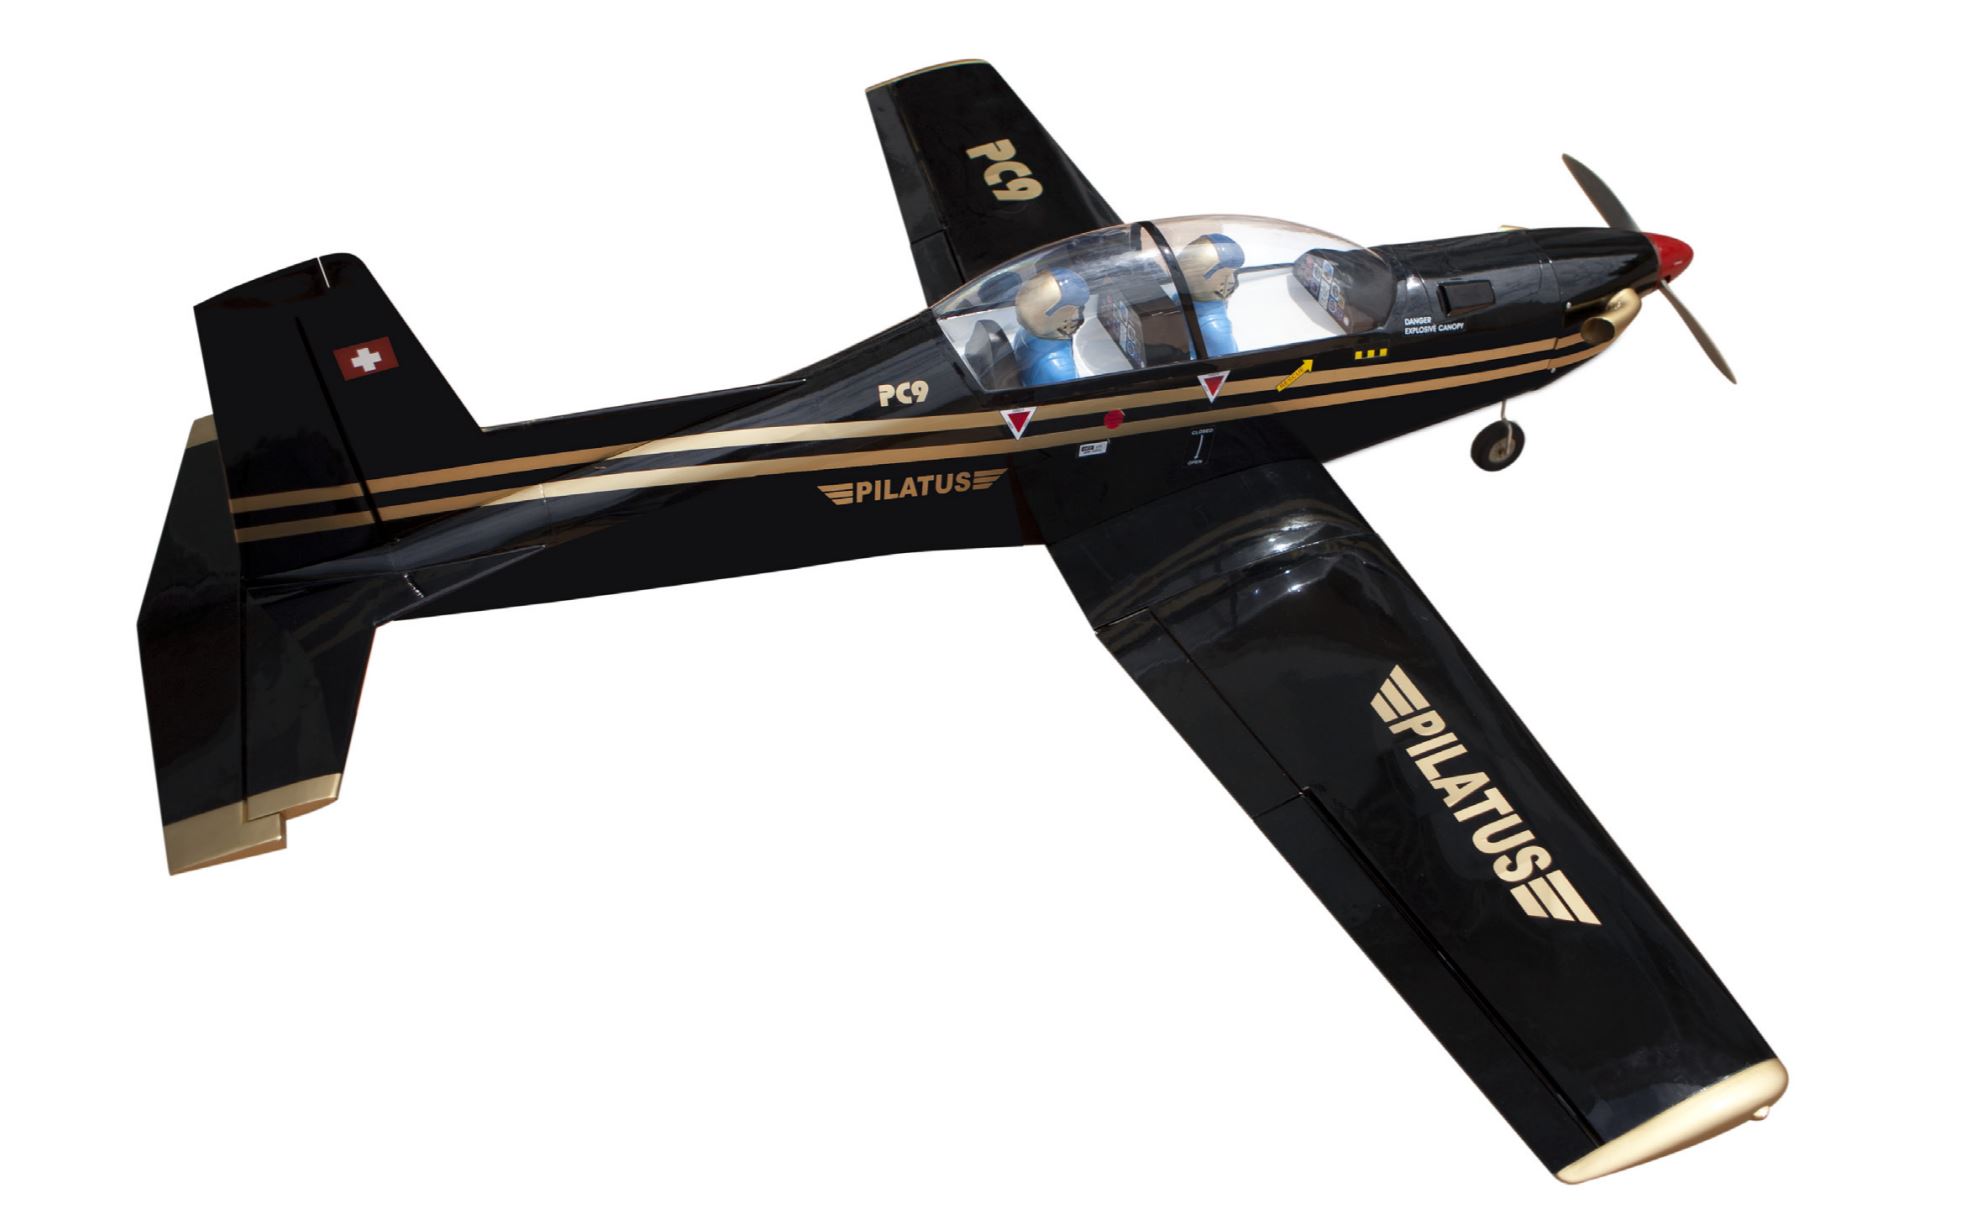 Pilatus PC 9 Direct Airscale